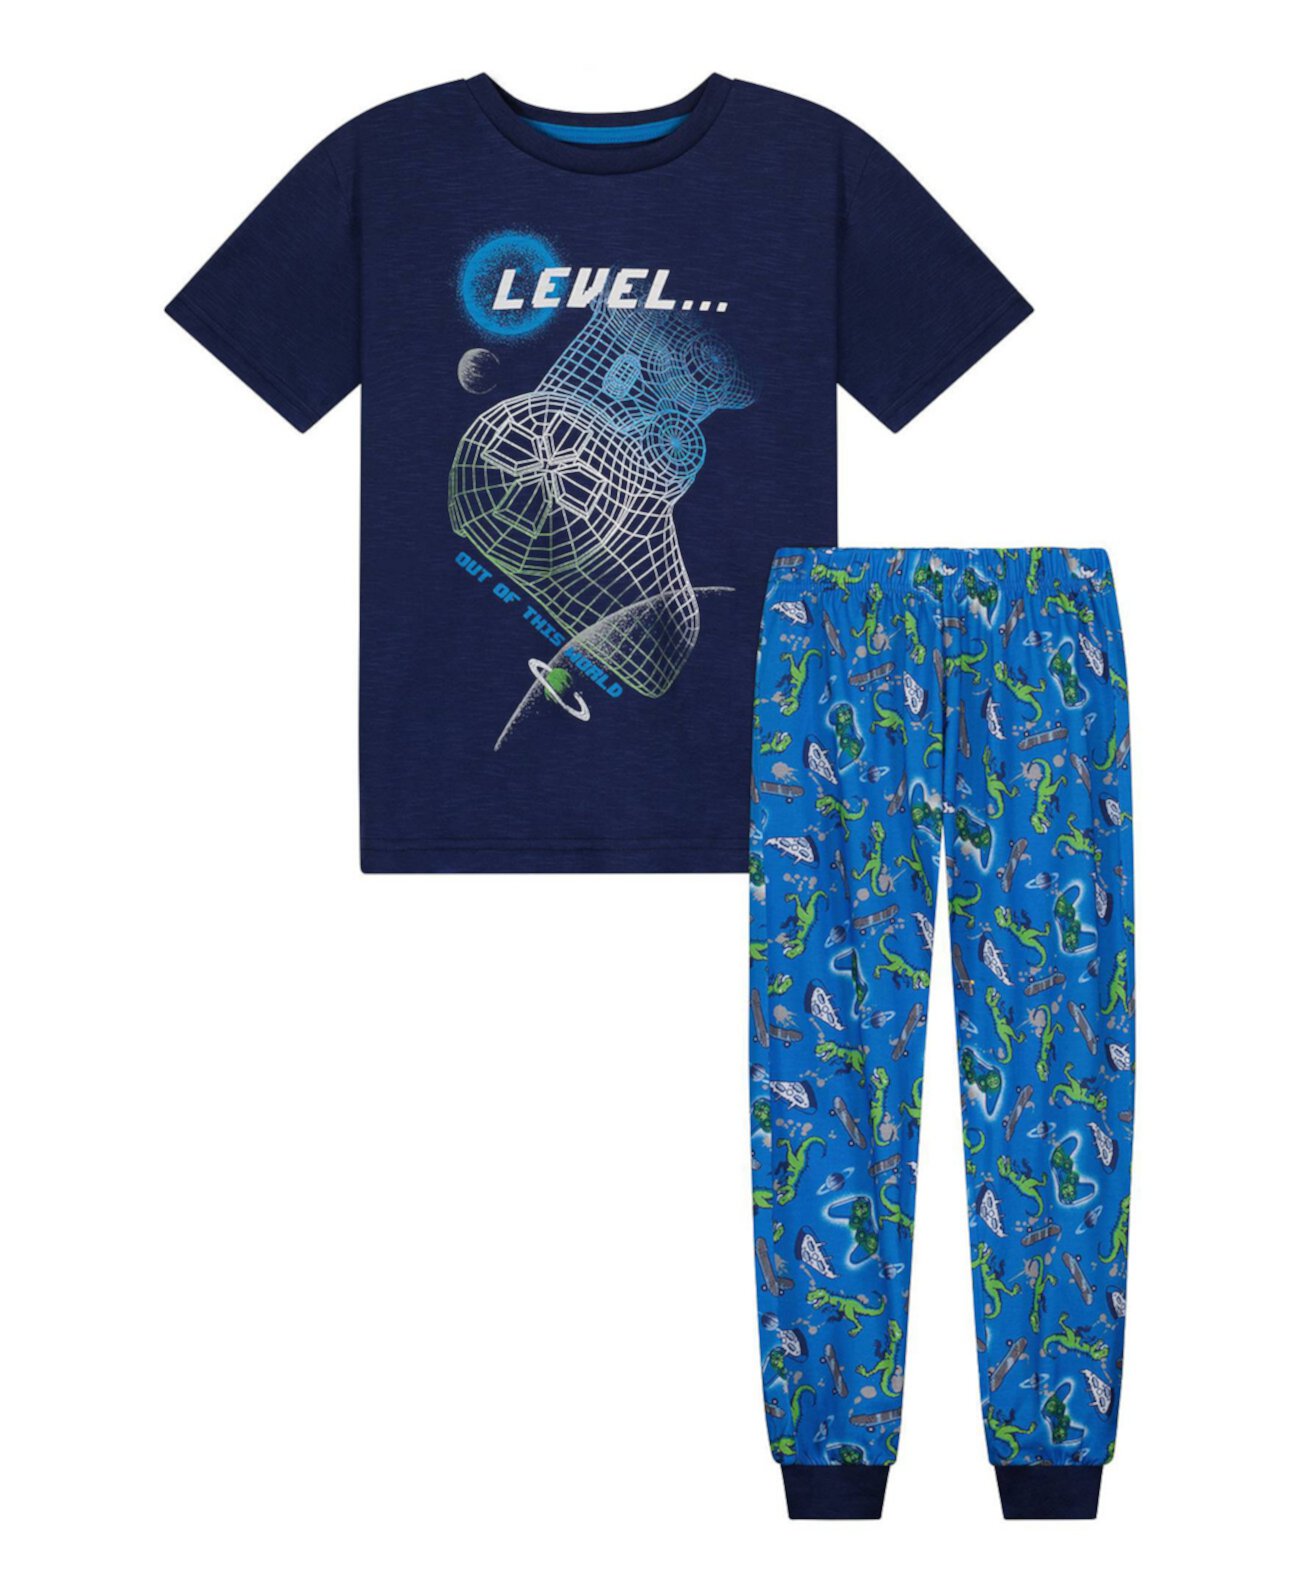 Пижамный комплект из футболки из джерси и штанов для бега для маленьких мальчиков, 2 предмета Sleep On It